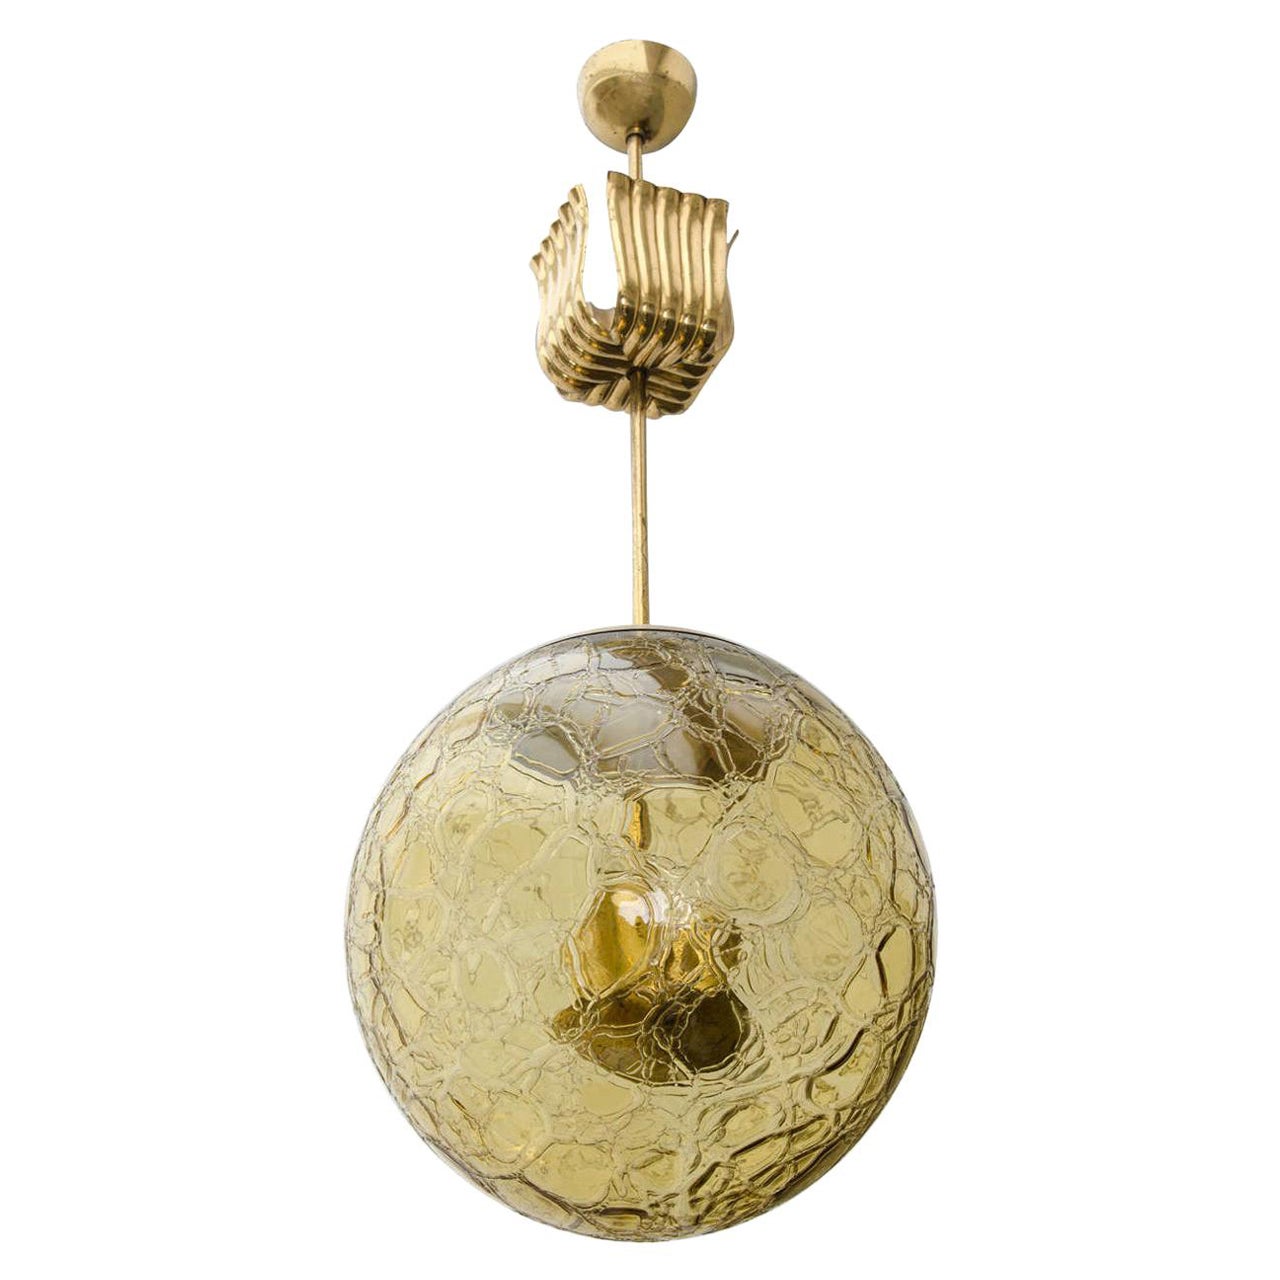 Lampe suspendue en verre de couleur ambre avec auvent décoratif, attribuée à Doria